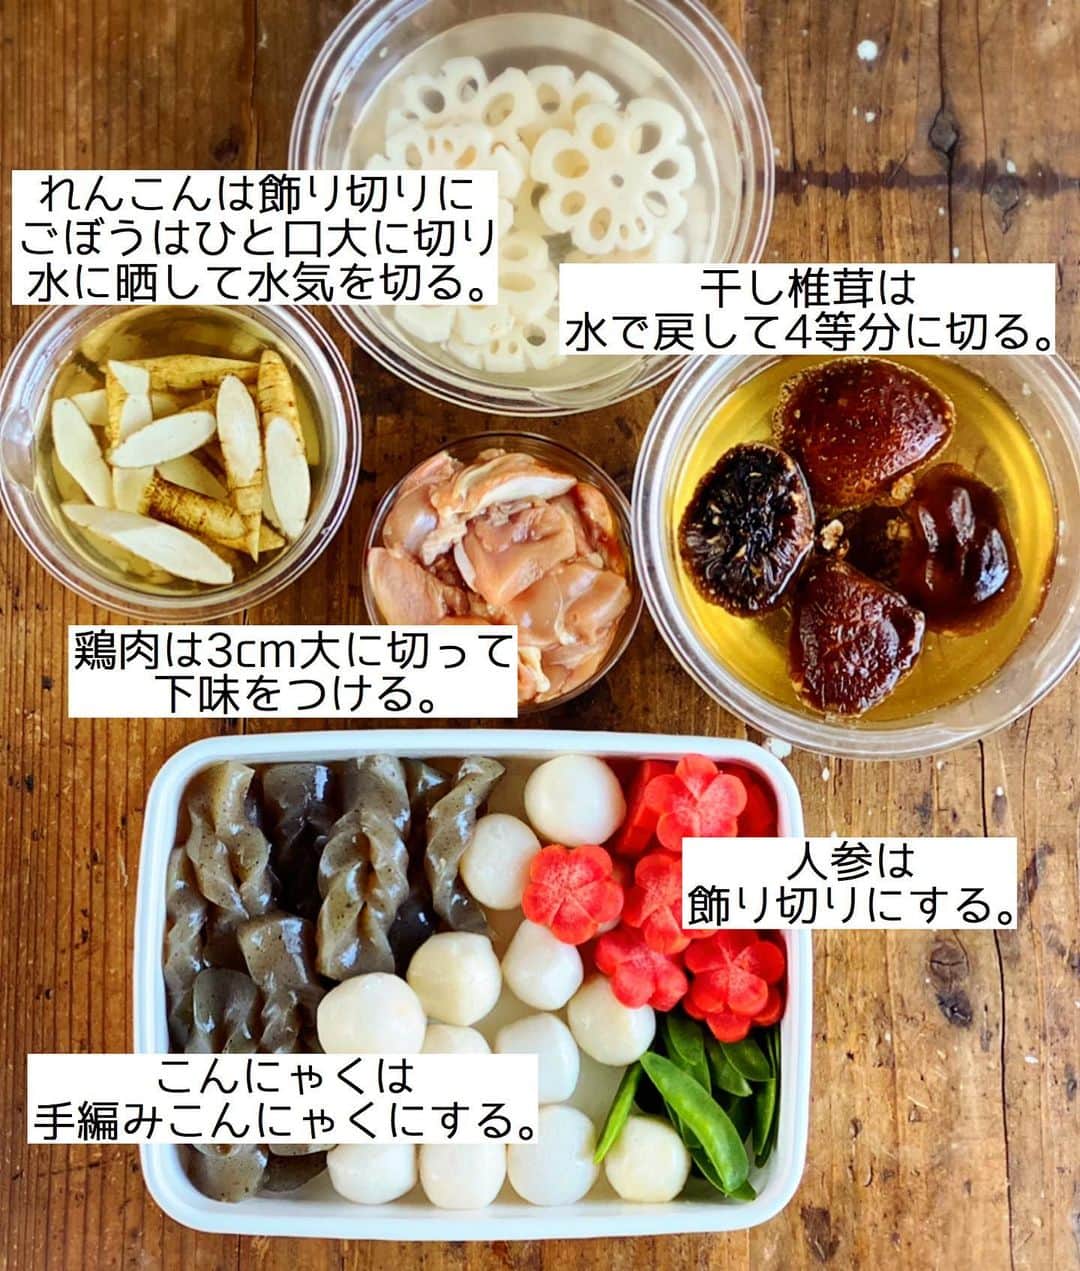 Mizuki【料理ブロガー・簡単レシピ】さんのインスタグラム写真 - (Mizuki【料理ブロガー・簡単レシピ】Instagram)「・﻿ 【#レシピ 】ーーーーーーーーー﻿ ♡おせち料理の定番♡筑前煮♡﻿ ーーーーーーーーーーーーーーー﻿ ﻿ ﻿ ﻿ おはようございます(*^^*)﻿ ﻿ 今日ご紹介させていただくのは﻿ おせち料理の定番 \\ 筑前煮 //﻿ 鶏肉とたっぷりの根菜が入った﻿ 冷めても美味しい煮物です♩﻿ ﻿ 今回は人参やれんこんを飾り切りし﻿ お正月らしく仕上げました(*^^*)﻿ 面倒な時や普段のおかずにする時は﻿ 全ての食材をひと口大に切ればOK♡﻿ こんにゃくはアク抜き不要のもの﻿ 里芋は冷凍里芋を使うなどして﻿ 省ける手間は省きましたよ〜(*´艸`)﻿ ﻿ 食材の下処理さえやってしまえば﻿ 一気に煮込むだけの簡単レシピです♩﻿ よかったらお試し下さいね(*^^*)﻿ ﻿ ﻿ ﻿ ＿＿＿＿＿＿＿＿＿＿＿＿＿＿＿＿＿＿＿＿﻿ 【4人分】﻿ 鶏もも肉...1枚(250g)﻿ ●酒・醤油...各小1﻿ 干し椎茸...4枚﻿ 人参...1本﻿ れんこん...1節(200g)﻿ ごぼう...1本(100g)﻿ 冷凍里芋...250g﻿ こんにゃく(アク抜き不要のもの)...1枚﻿ 絹さや...適量﻿ サラダ油...小1﻿ ☆椎茸の戻し汁...300ml﻿ ☆砂糖・醤油・酒・みりん...各大3﻿ ☆和風だし...小1/3﻿ ﻿ ﻿ 1.干し椎茸は水で戻して4等分に切る。鶏肉は3cm大に切って●を揉み込む。人参は花の形に飾り切り(又はひと口大の乱切り)する。れんこんは花の形に飾り切り(又はひと口大の乱切り)にし、ごぼうは皮をこそげてひと口大に切り、それぞれ水に晒して水気を切る。こんにゃくは手網こんにゃくにする(又はひと口大に切る)。﻿ 2.鍋にサラダ油を中火で熱して鶏肉を炒める。色が変わったら鶏肉以外の1と里芋を加えて更に2分炒める。﻿ 3.☆を加え、ひと煮立ちしたら落とし蓋をのせ、弱めの中火で10分煮る。落とし蓋を外し、時々混ぜながら更に10分煮る。﻿ 4.器に3を盛り、さっと塩茹でした絹さやを飾る。﻿ ￣￣￣￣￣￣￣￣￣￣￣￣￣￣￣￣￣￣￣￣﻿ ﻿ ﻿ ﻿ 《ポイント》﻿ ♦︎一度冷ますとより味が染みます♩﻿ ♦︎甘めの味付けです♩﻿ ♦︎人参、れんこん、こんにゃくは飾り切りにせず、ひと口大に切るだけでももちろんOK♩﻿ ♦︎金時人参を使用するとよりお正月らしくなります♩﻿ ♦︎生の里芋、アク抜きが必要なこんにゃくを使用する場合は下茹でして下さい♩﻿ ♦︎冷蔵庫で4〜5日保存できます♩﻿ ﻿ ﻿ ﻿ ﻿ ﻿ ﻿ ﻿ ﻿ ﻿ 📕新刊発売中📕﻿ 【ラクしておいしい！#1品晩ごはん 】﻿ ￣￣￣￣￣￣￣￣￣￣￣￣￣￣￣￣￣﻿ 私たちだってヘトヘトな日がある•••﻿ 毎日何品も作っていられない•••﻿ もうごはんに悩みたくない😢﻿ そんな時、1品ごはんはいかがでしょう？﻿ というご提案です✨﻿ ﻿ 【1品ごはん】は﻿ 副菜いらずで全てがシンプル！﻿ ￣￣￣￣￣￣￣￣￣￣￣￣￣￣￣￣￣￣﻿ 一品つくるだけでいいから﻿ 献立を考えなくてよし！﻿ ￣￣￣￣￣￣￣￣￣￣￣￣￣￣￣￣￣￣﻿ 悩まない、疲れない、﻿ 気力や時間がなくてもなんとかなる！﻿ ￣￣￣￣￣￣￣￣￣￣￣￣￣￣￣￣￣￣﻿ そんな頼りになる﻿ 便利なお助けごはんです☺️💕﻿ (ハイライトに🔗貼っています✨)﻿ ￣￣￣￣￣￣￣￣￣￣￣￣￣￣￣￣￣﻿ ﻿ ﻿ ﻿ ﻿ ﻿ ⭐️発売中⭐️﻿ ＿＿＿＿＿＿＿＿＿＿＿＿＿＿＿＿＿＿﻿ しんどくない献立、考えました♩﻿ \15分でいただきます/﻿ 📕Mizukiの2品献立 📕﻿ ﻿ 和食をもっとカジュアルに♩﻿ \毎日のごはんがラクになる/﻿ 📘#Mizukiの今どき和食 📘﻿ ﻿ ホケミレシピの決定版♩﻿ \はじめてでも失敗しない/﻿ 📙ホットケーキミックスのお菓子 📙﻿ ﻿ NHKまる得マガジンテキスト☆﻿ ホットケーキミックスで﻿ 📗絶品おやつ&意外なランチ📗﻿ ￣￣￣￣￣￣￣￣￣￣￣￣￣￣￣￣￣￣﻿ ﻿ ﻿ ﻿ ＿＿＿＿＿＿＿＿＿＿＿＿＿＿＿＿＿＿﻿ レシピを作って下さった際や﻿ レシピ本についてのご投稿には﻿ タグ付け( @mizuki_31cafe )して﻿ お知らせいただけると嬉しいです😊💕﻿ ￣￣￣￣￣￣￣￣￣￣￣￣￣￣￣￣￣￣﻿ ﻿ ﻿ ﻿ ﻿ #筑前煮#常備菜#作り置き#お正月料理#おせち料理#Mizuki#簡単レシピ#時短レシピ#節約レシピ#料理#フーディーテーブル#マカロニメイト#おうちごはん#デリスタグラマー#料理好きな人と繋がりたい#食べ物#料理記録#おうちごはんlover#写真好きな人と繋がりたい#foodpic#cooking#recipe#lin_stagrammer#foodporn#yummy#f52grams#筑前煮m」12月26日 7時30分 - mizuki_31cafe